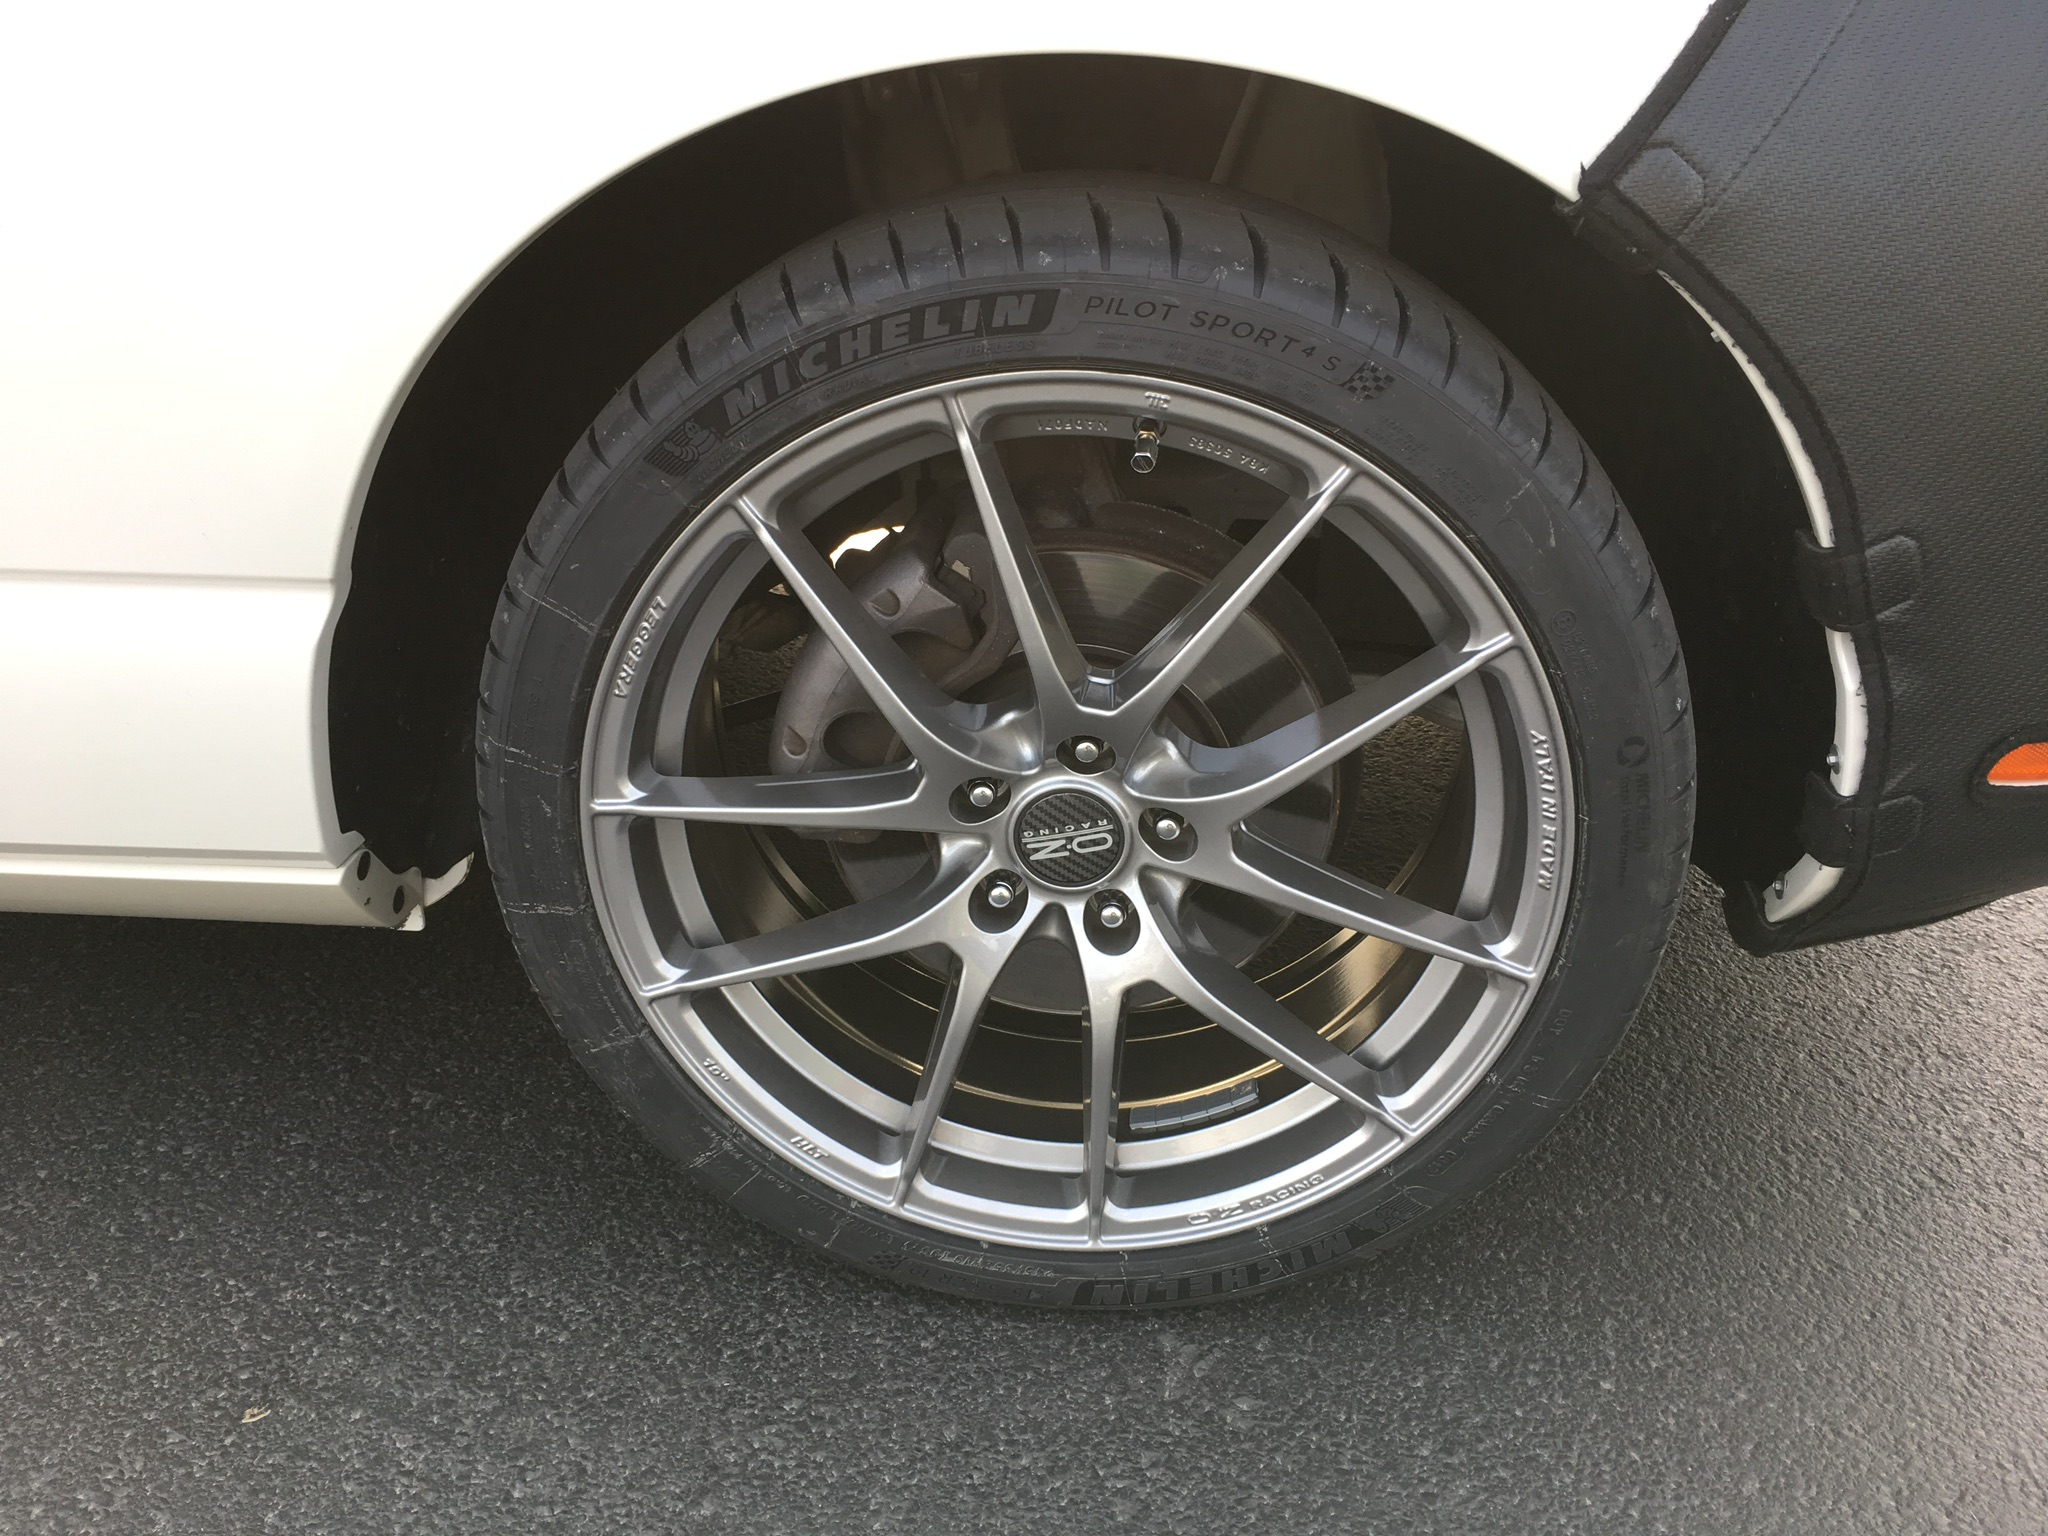 OZ 19 inch wheels